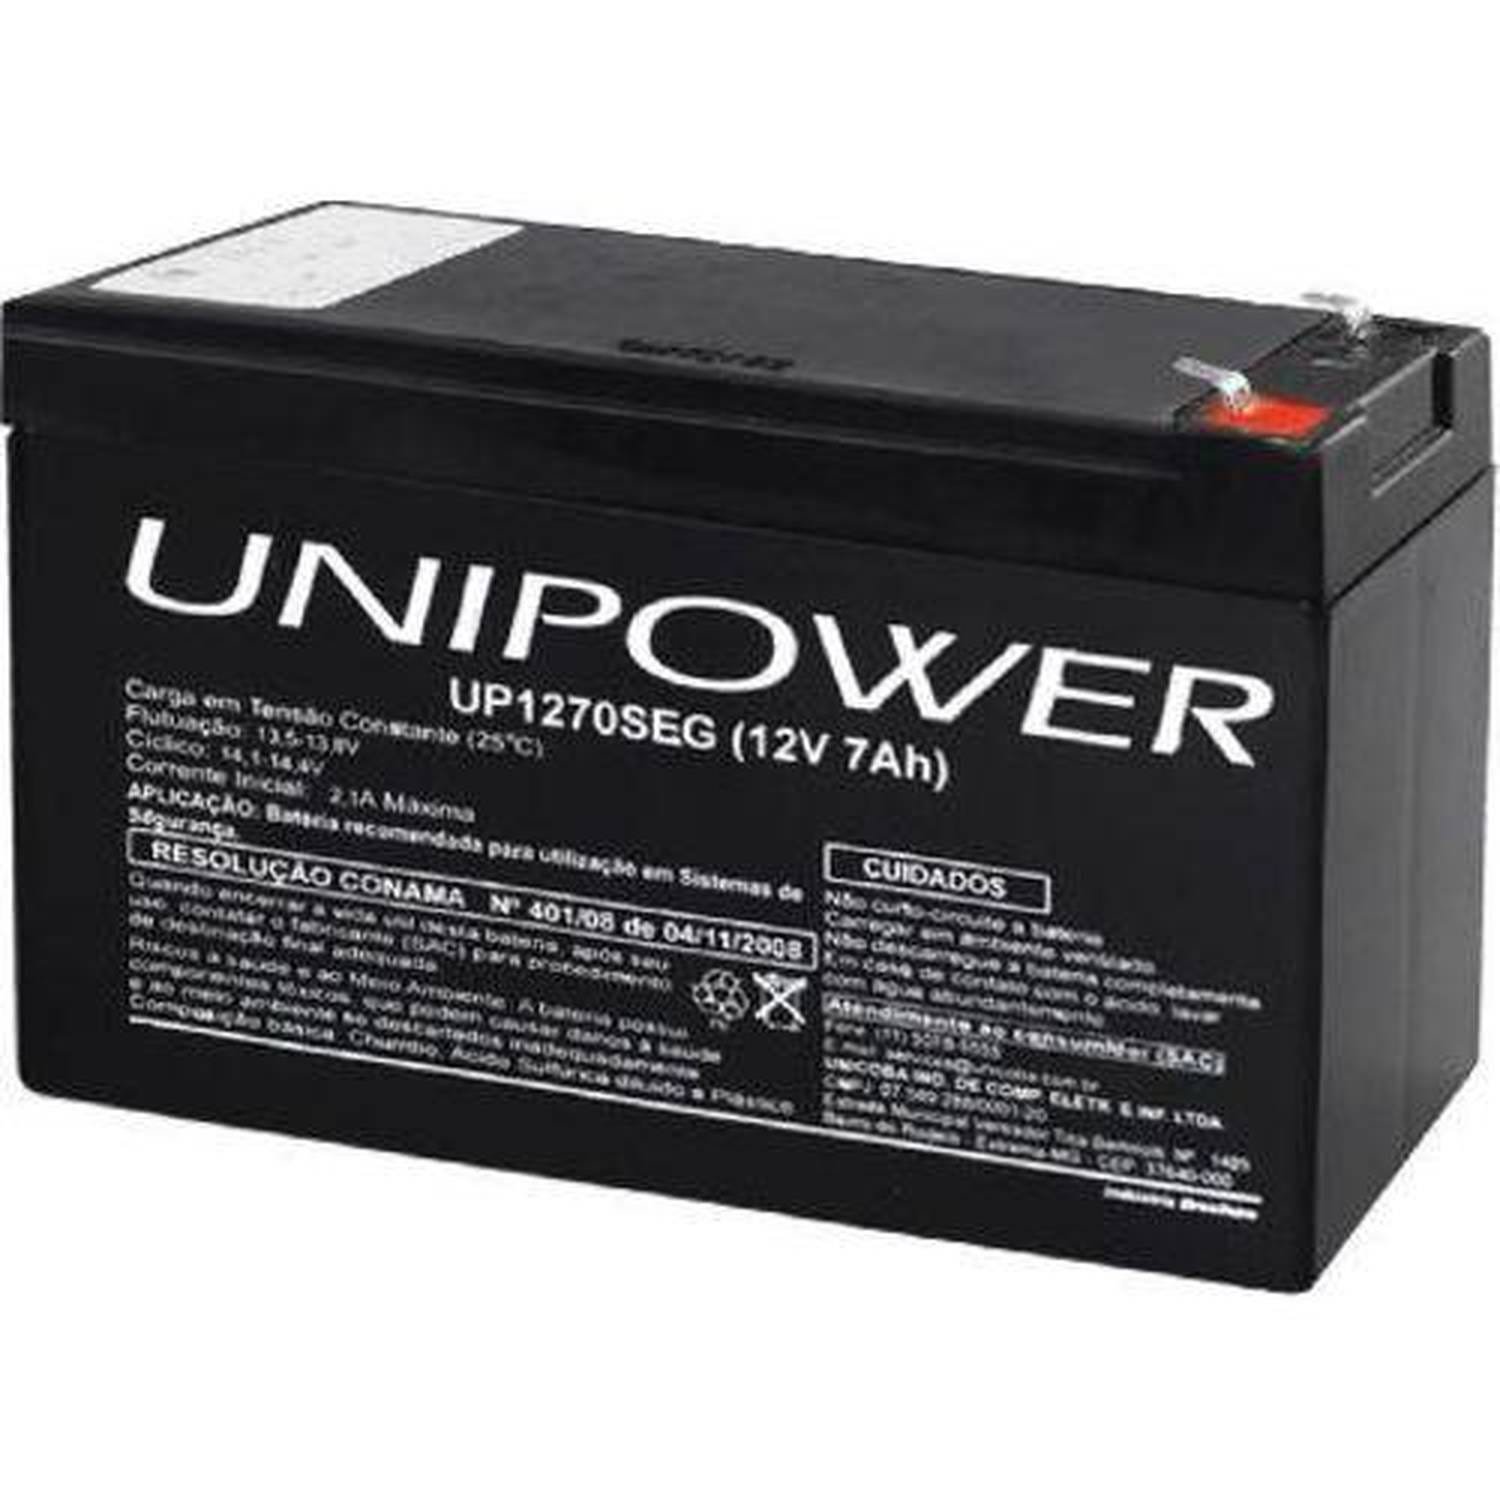 Bateria 12v 7,0 ah(up1270seg)f187, destinada ao mercado de segurança - 1